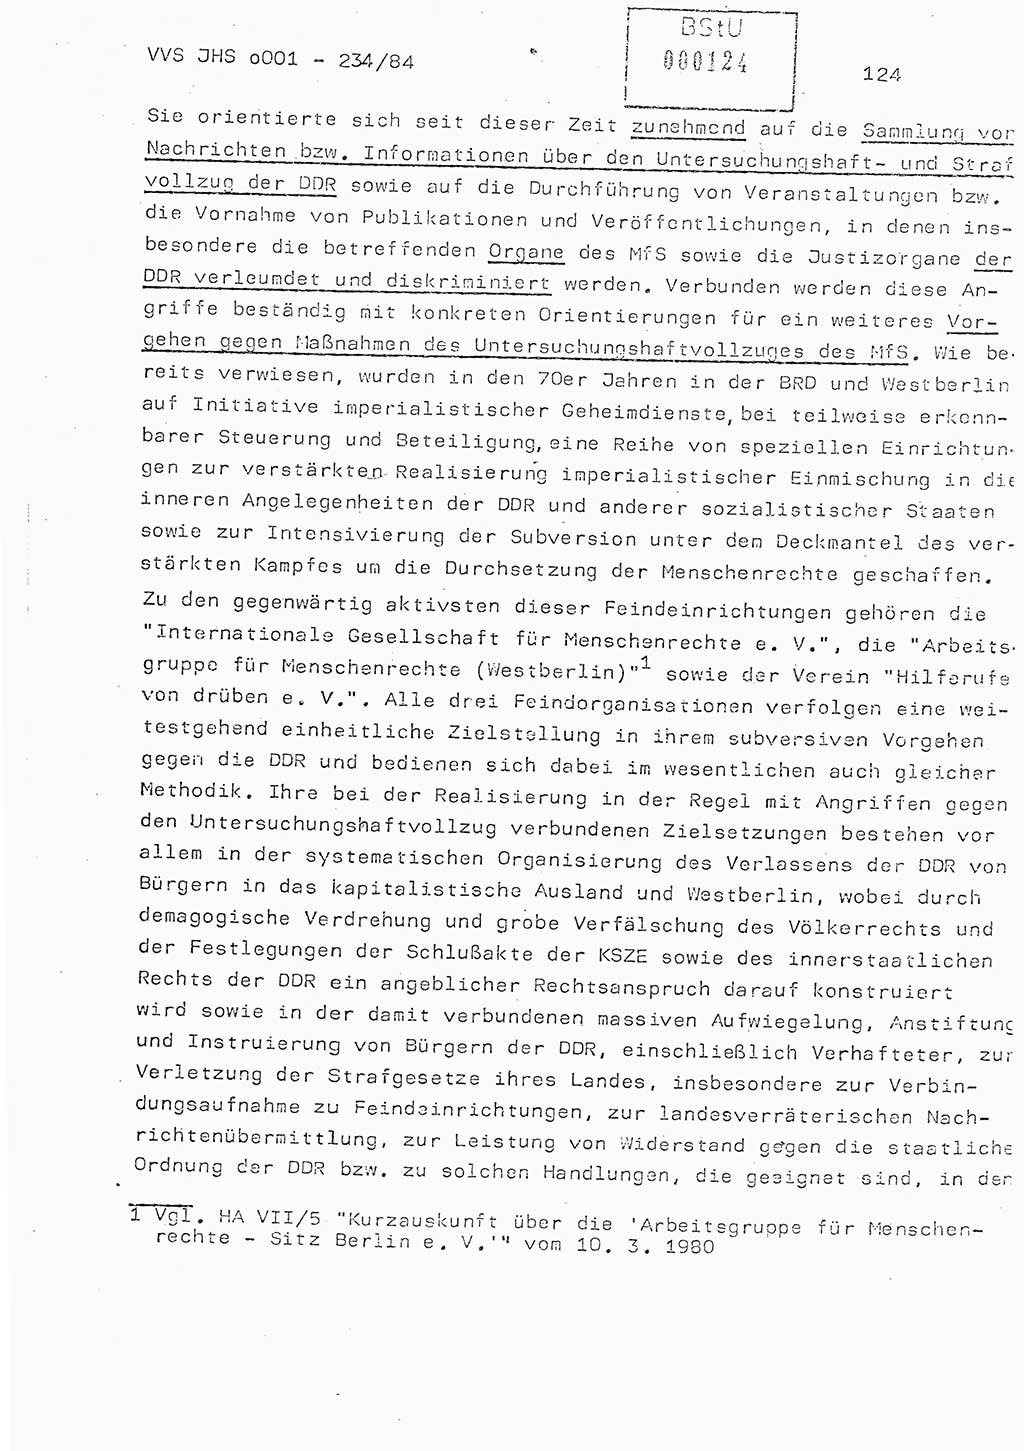 Dissertation Oberst Siegfried Rataizick (Abt. ⅩⅣ), Oberstleutnant Volkmar Heinz (Abt. ⅩⅣ), Oberstleutnant Werner Stein (HA Ⅸ), Hauptmann Heinz Conrad (JHS), Ministerium für Staatssicherheit (MfS) [Deutsche Demokratische Republik (DDR)], Juristische Hochschule (JHS), Vertrauliche Verschlußsache (VVS) o001-234/84, Potsdam 1984, Seite 124 (Diss. MfS DDR JHS VVS o001-234/84 1984, S. 124)